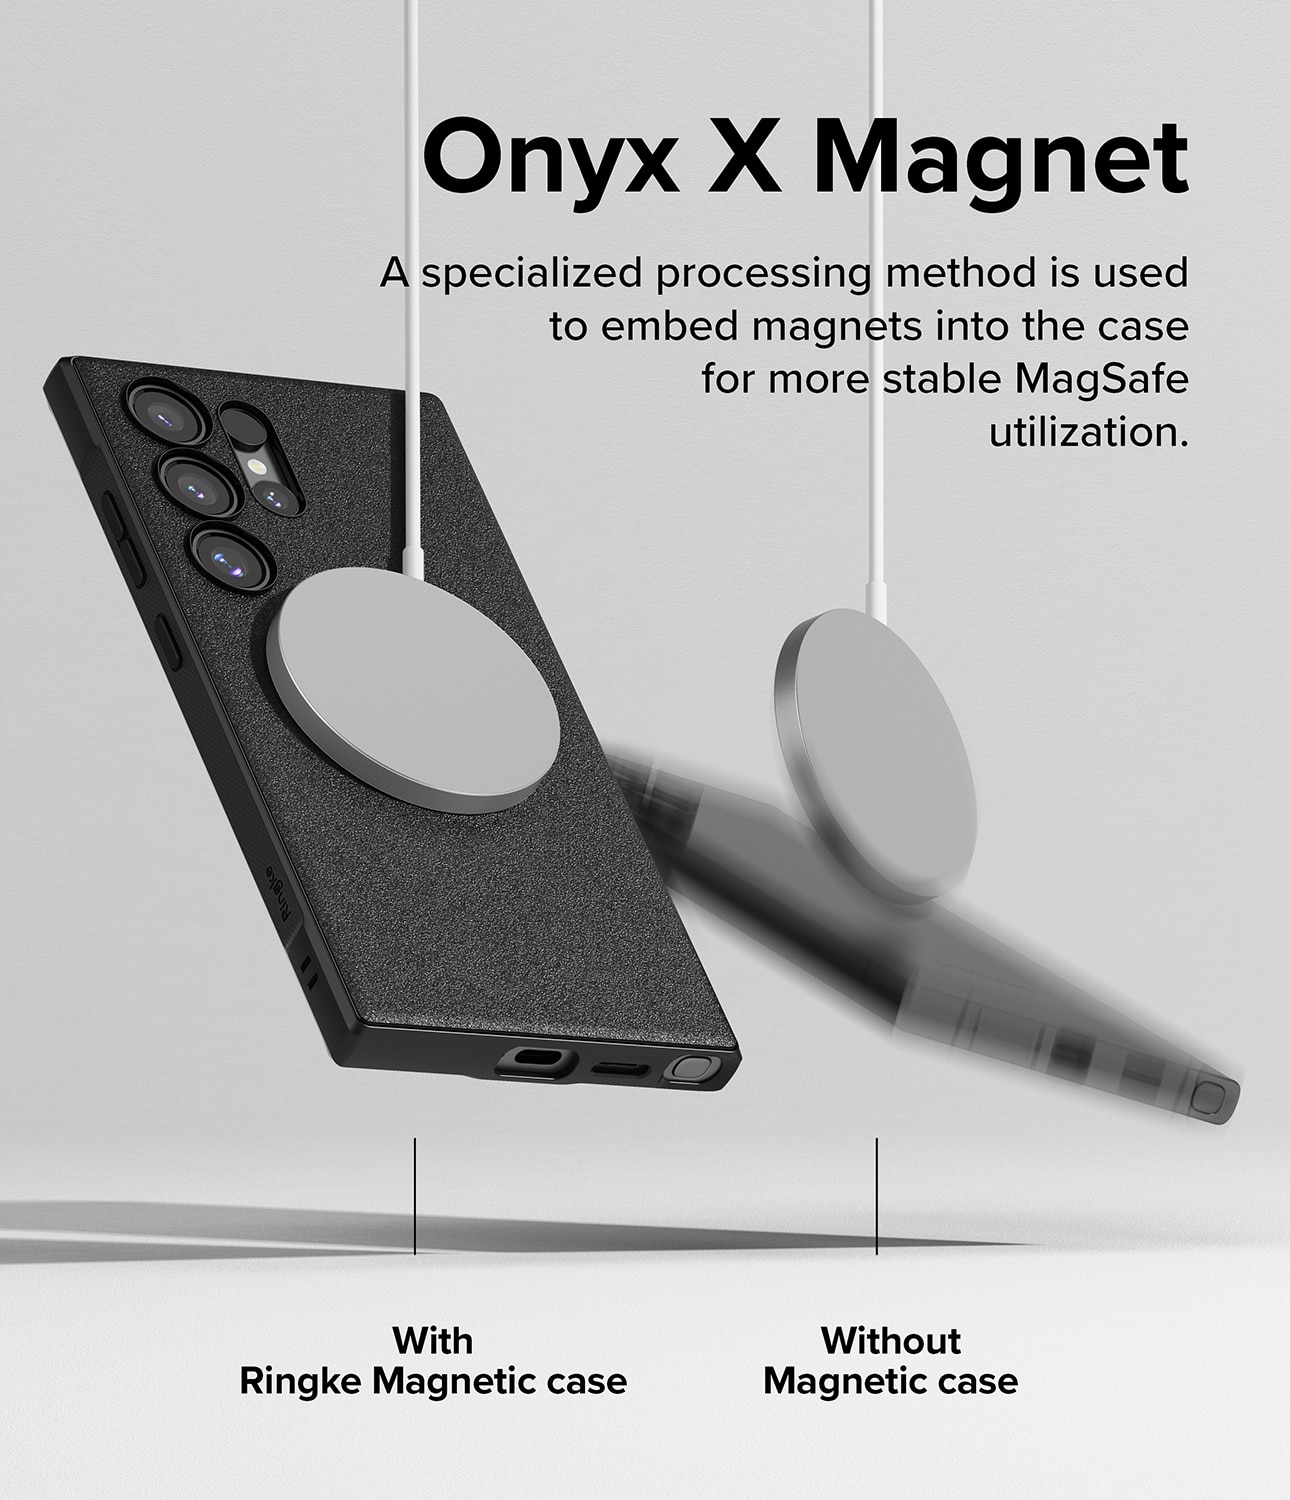 Funda Onyx Magnetic Samsung Galaxy S24 Ultra Black